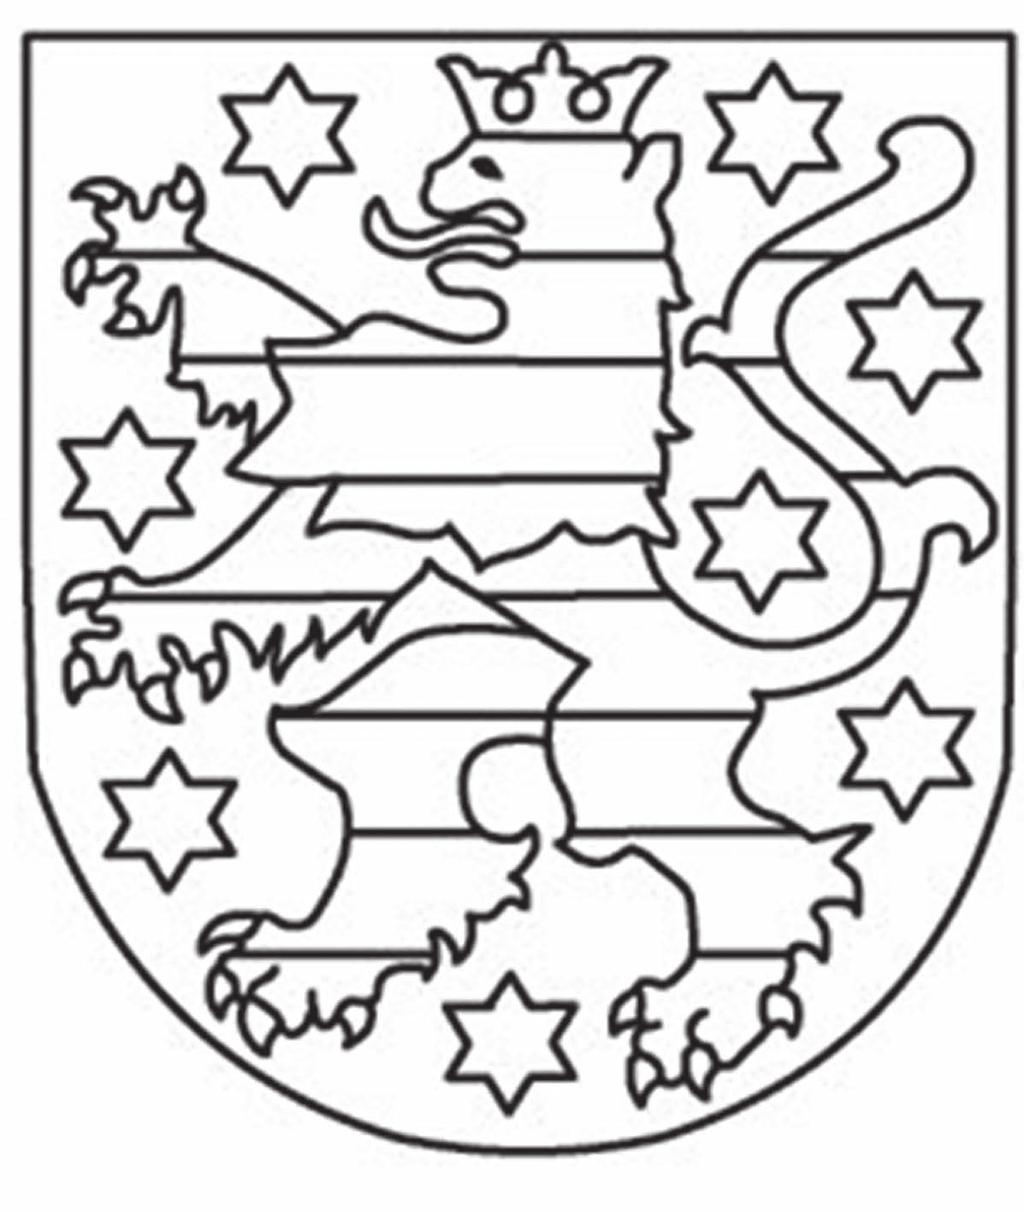 Male auch das Land Thüringen in der Karte farbig an.